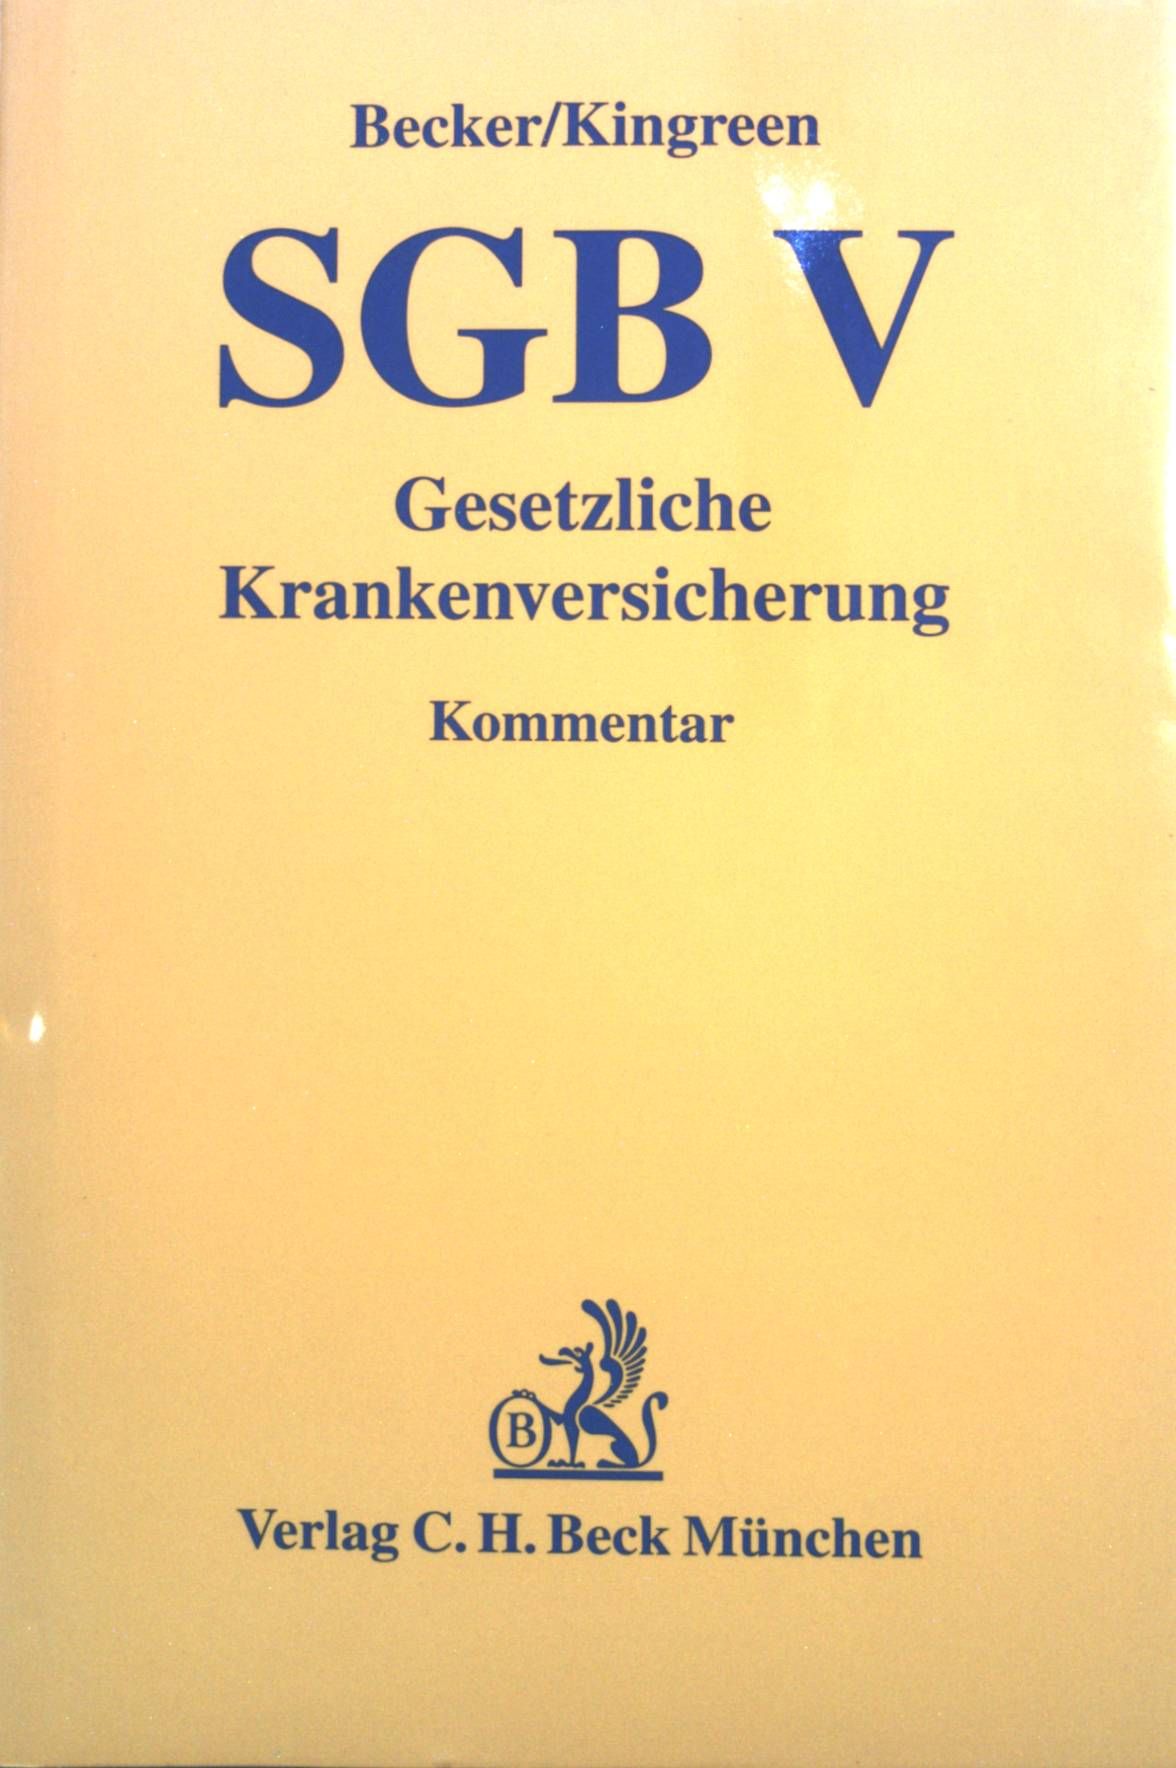 SGB V, gesetzliche Krankenversicherung : Kommentar. - Becker, Ulrich und Thorsten Kingreen